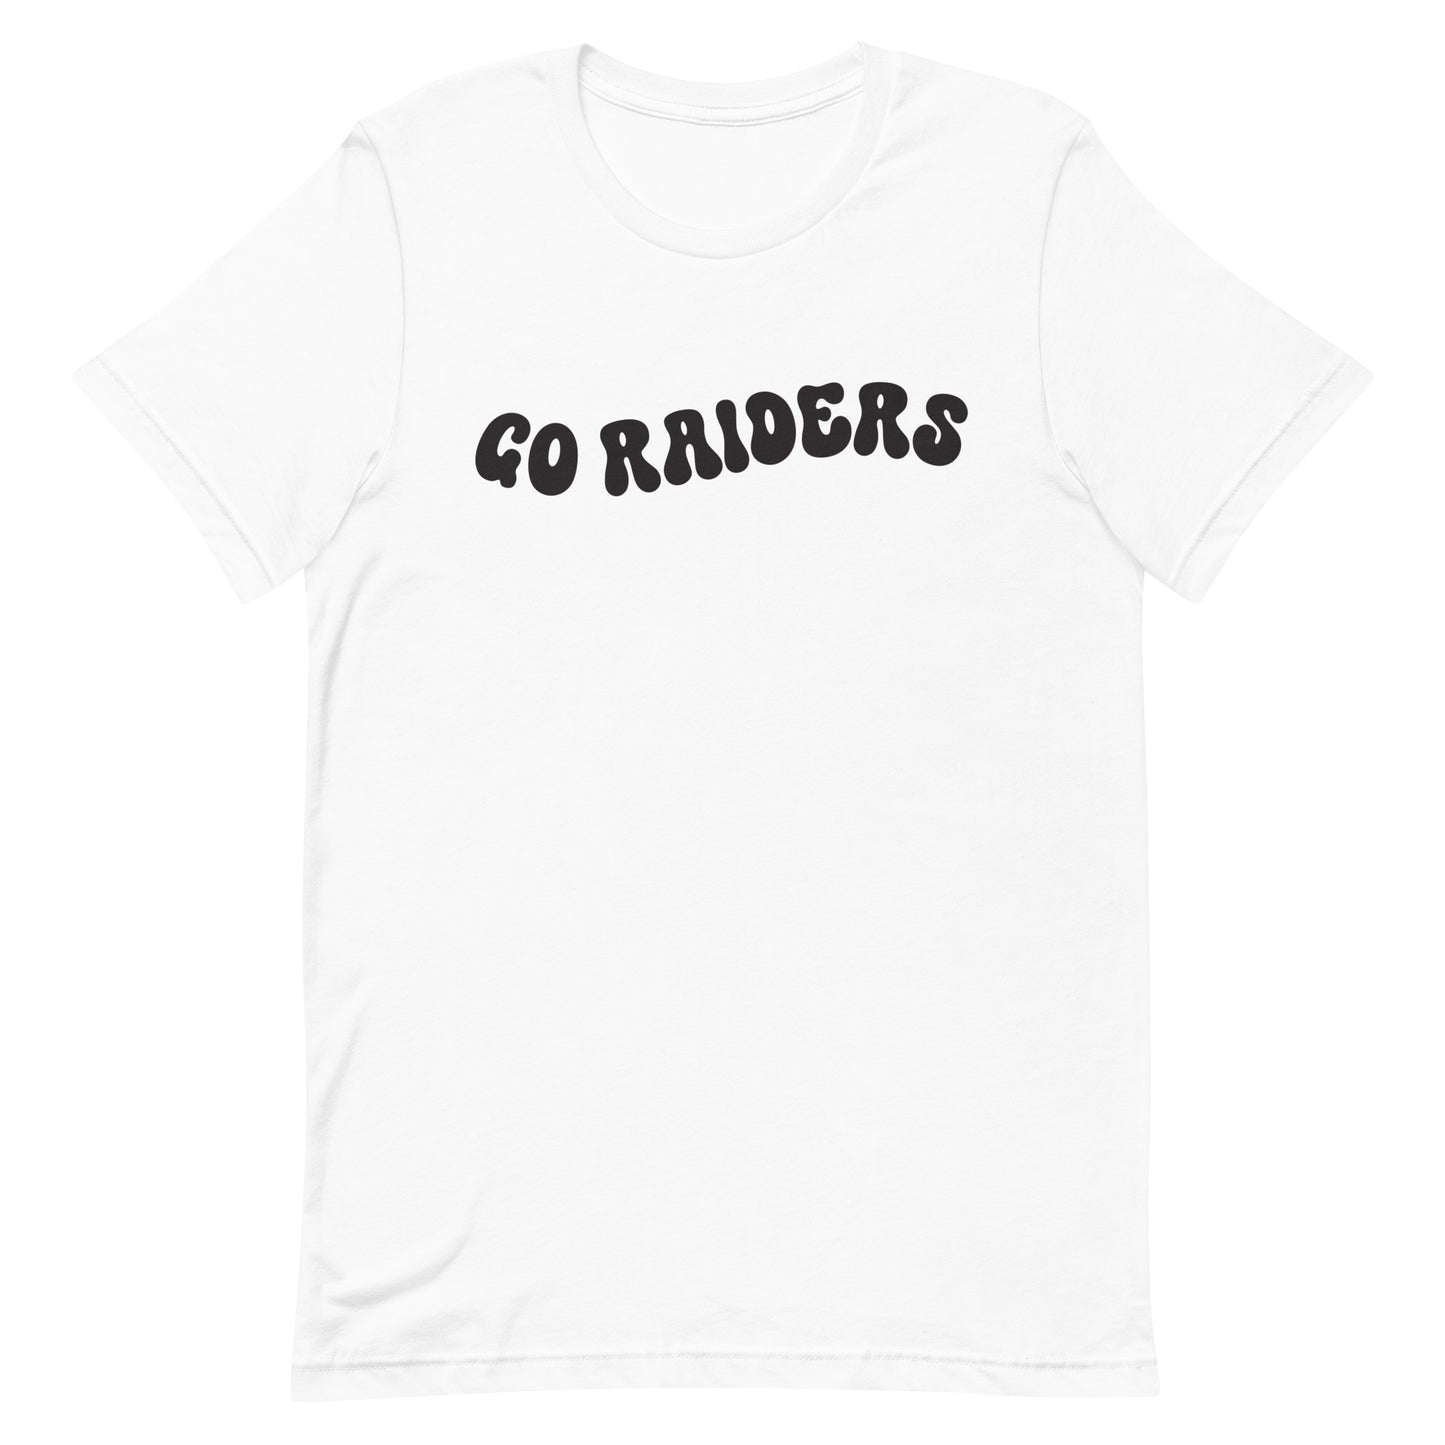 Raiders Retro Game Day Tee